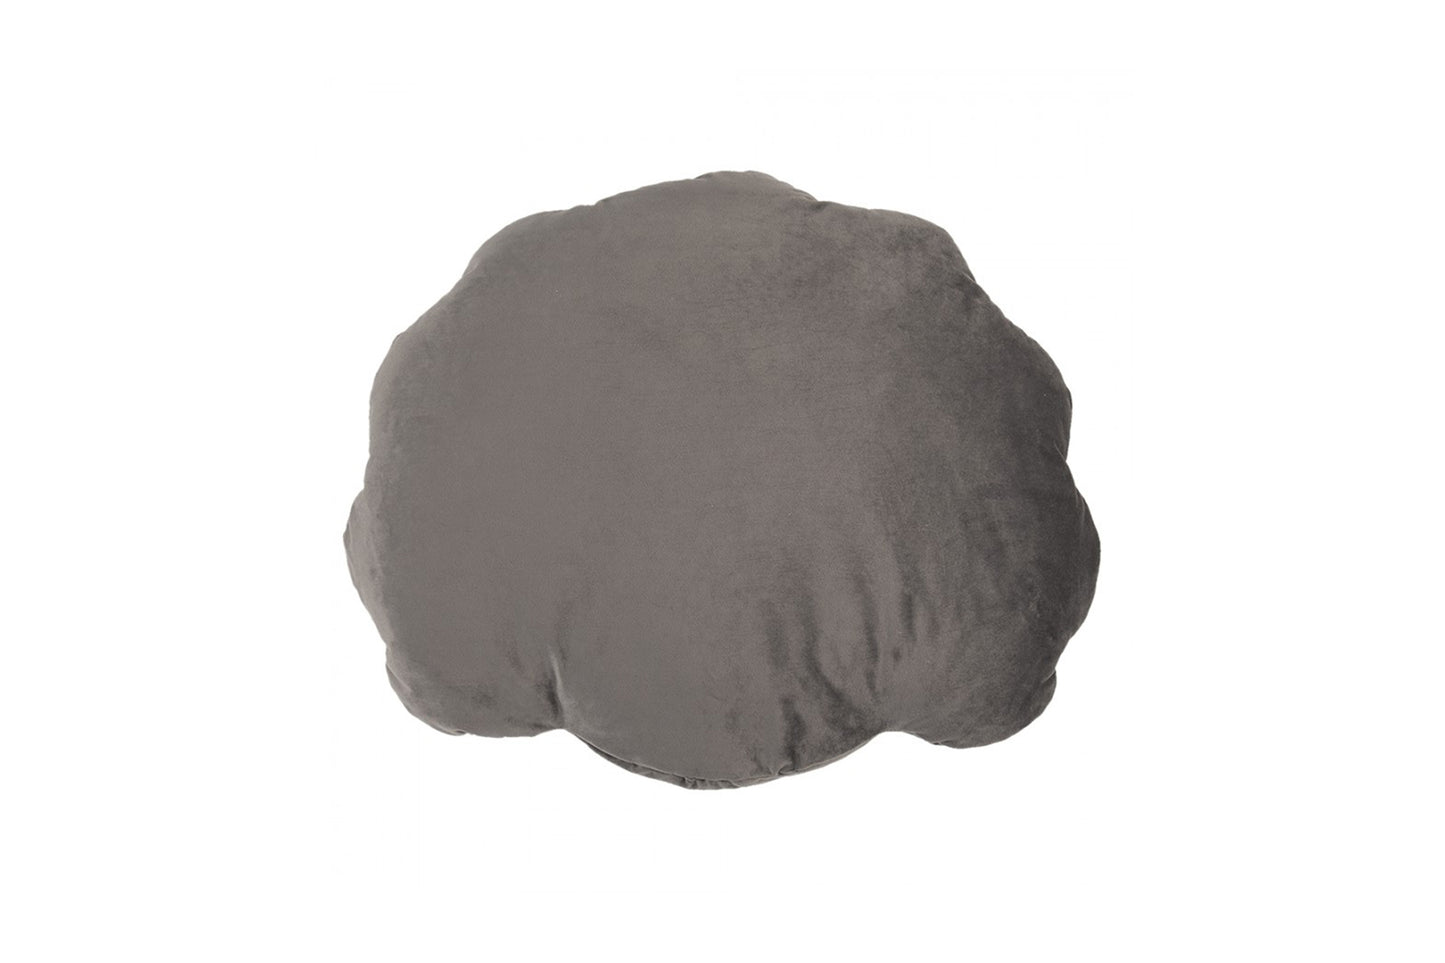 Cuscino a forma di conchiglia in velluto grigio di Clayre & Eef (38x48)